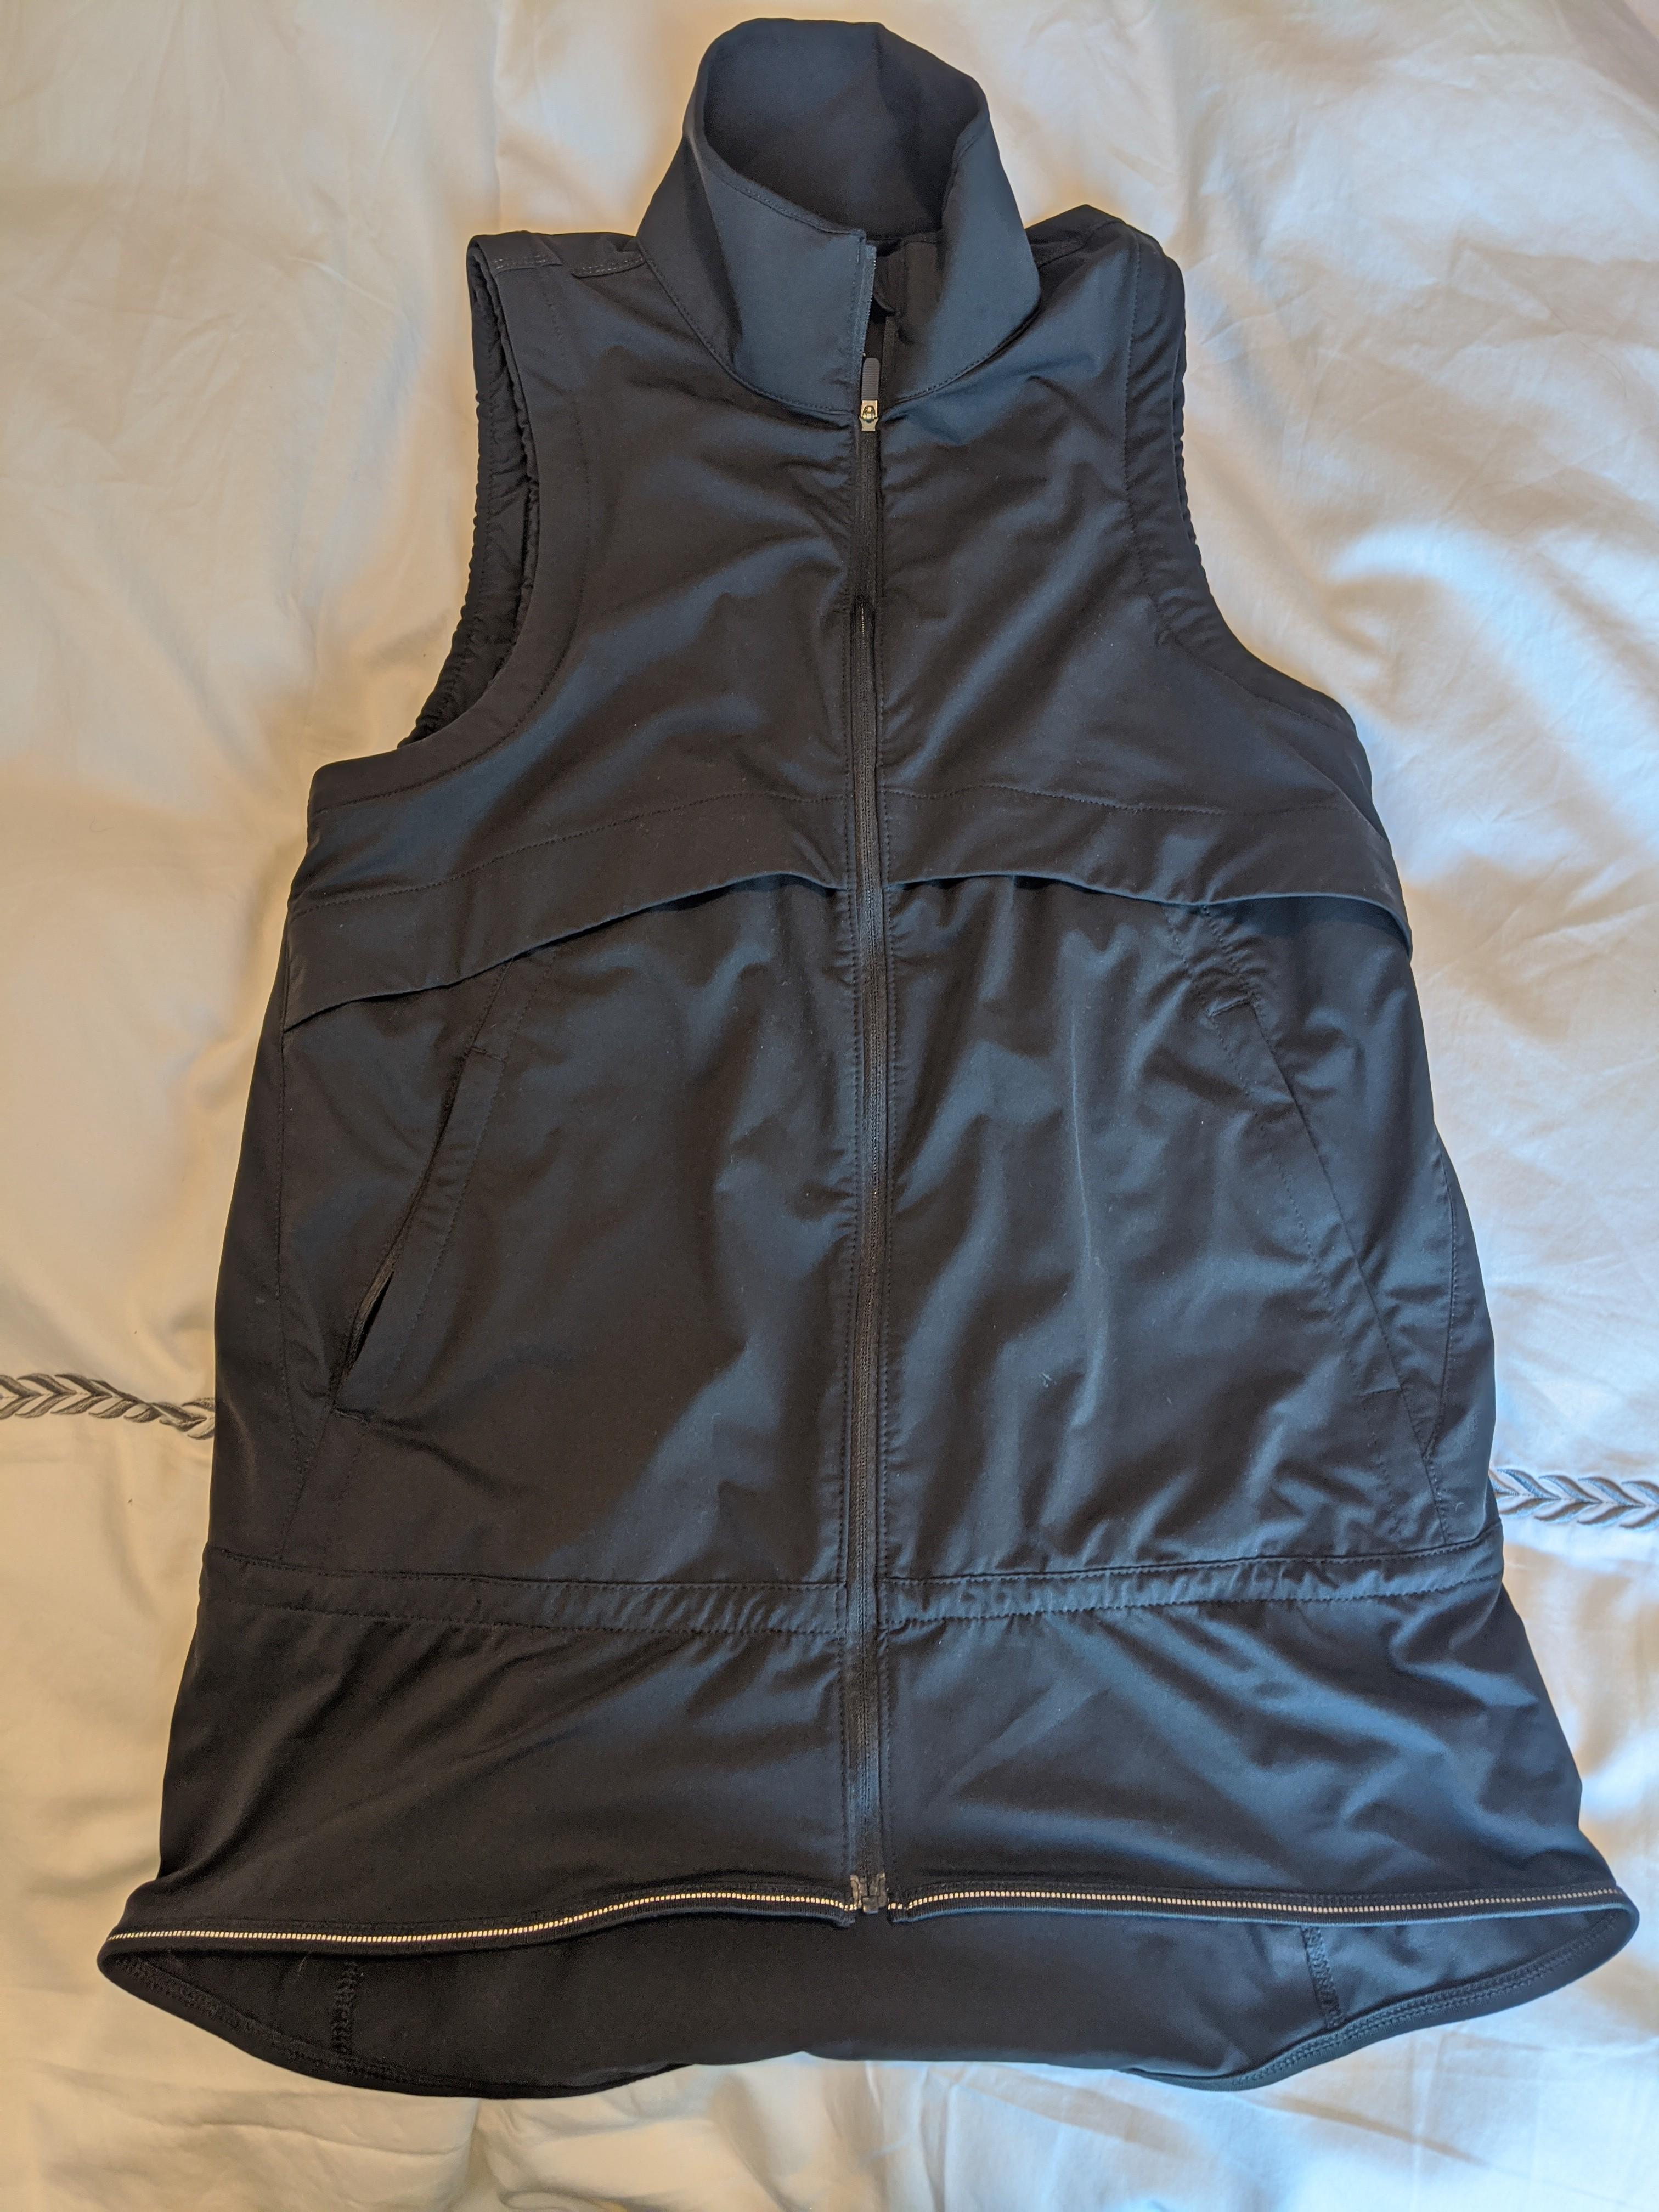 lululemon women's running vest